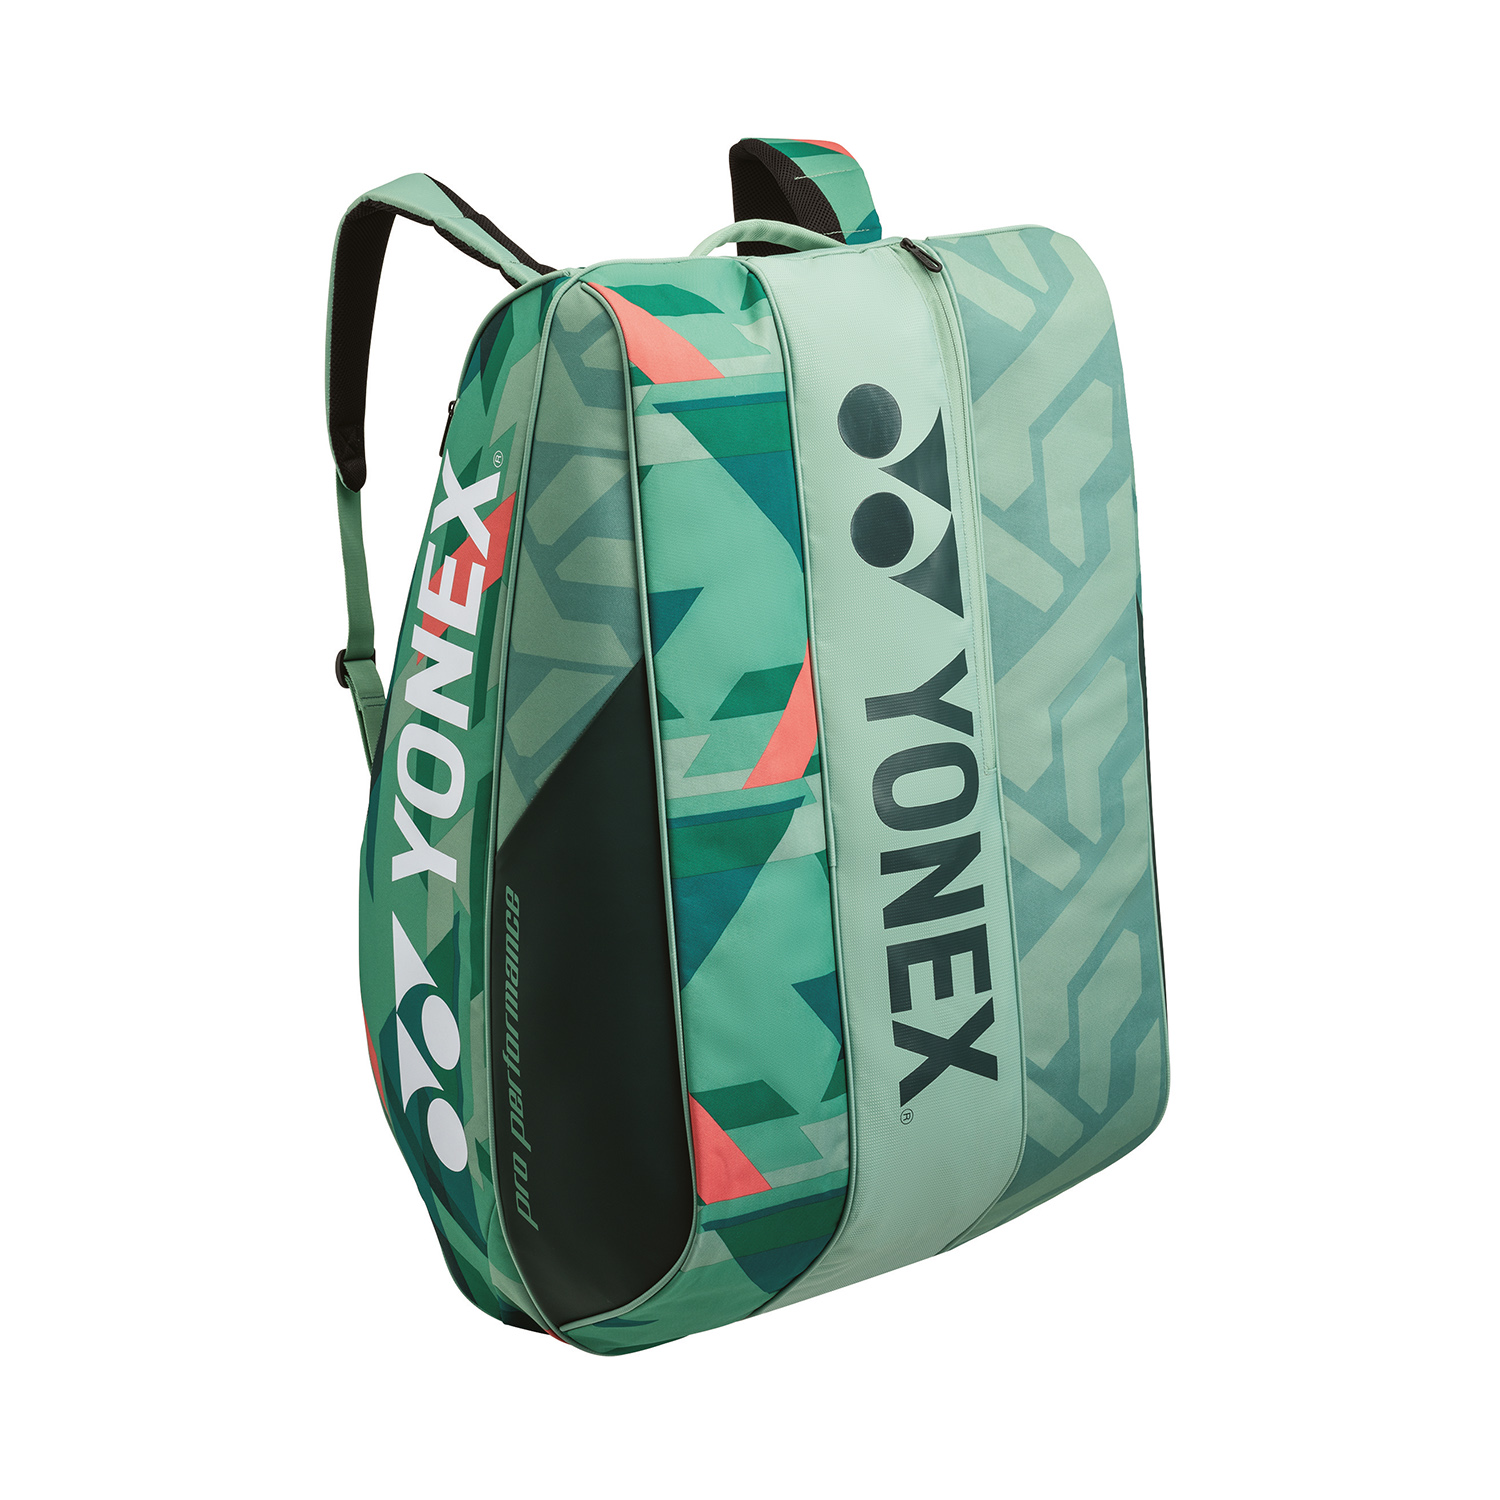 Yonex Bag Pro x 12 Bag - Olive Green